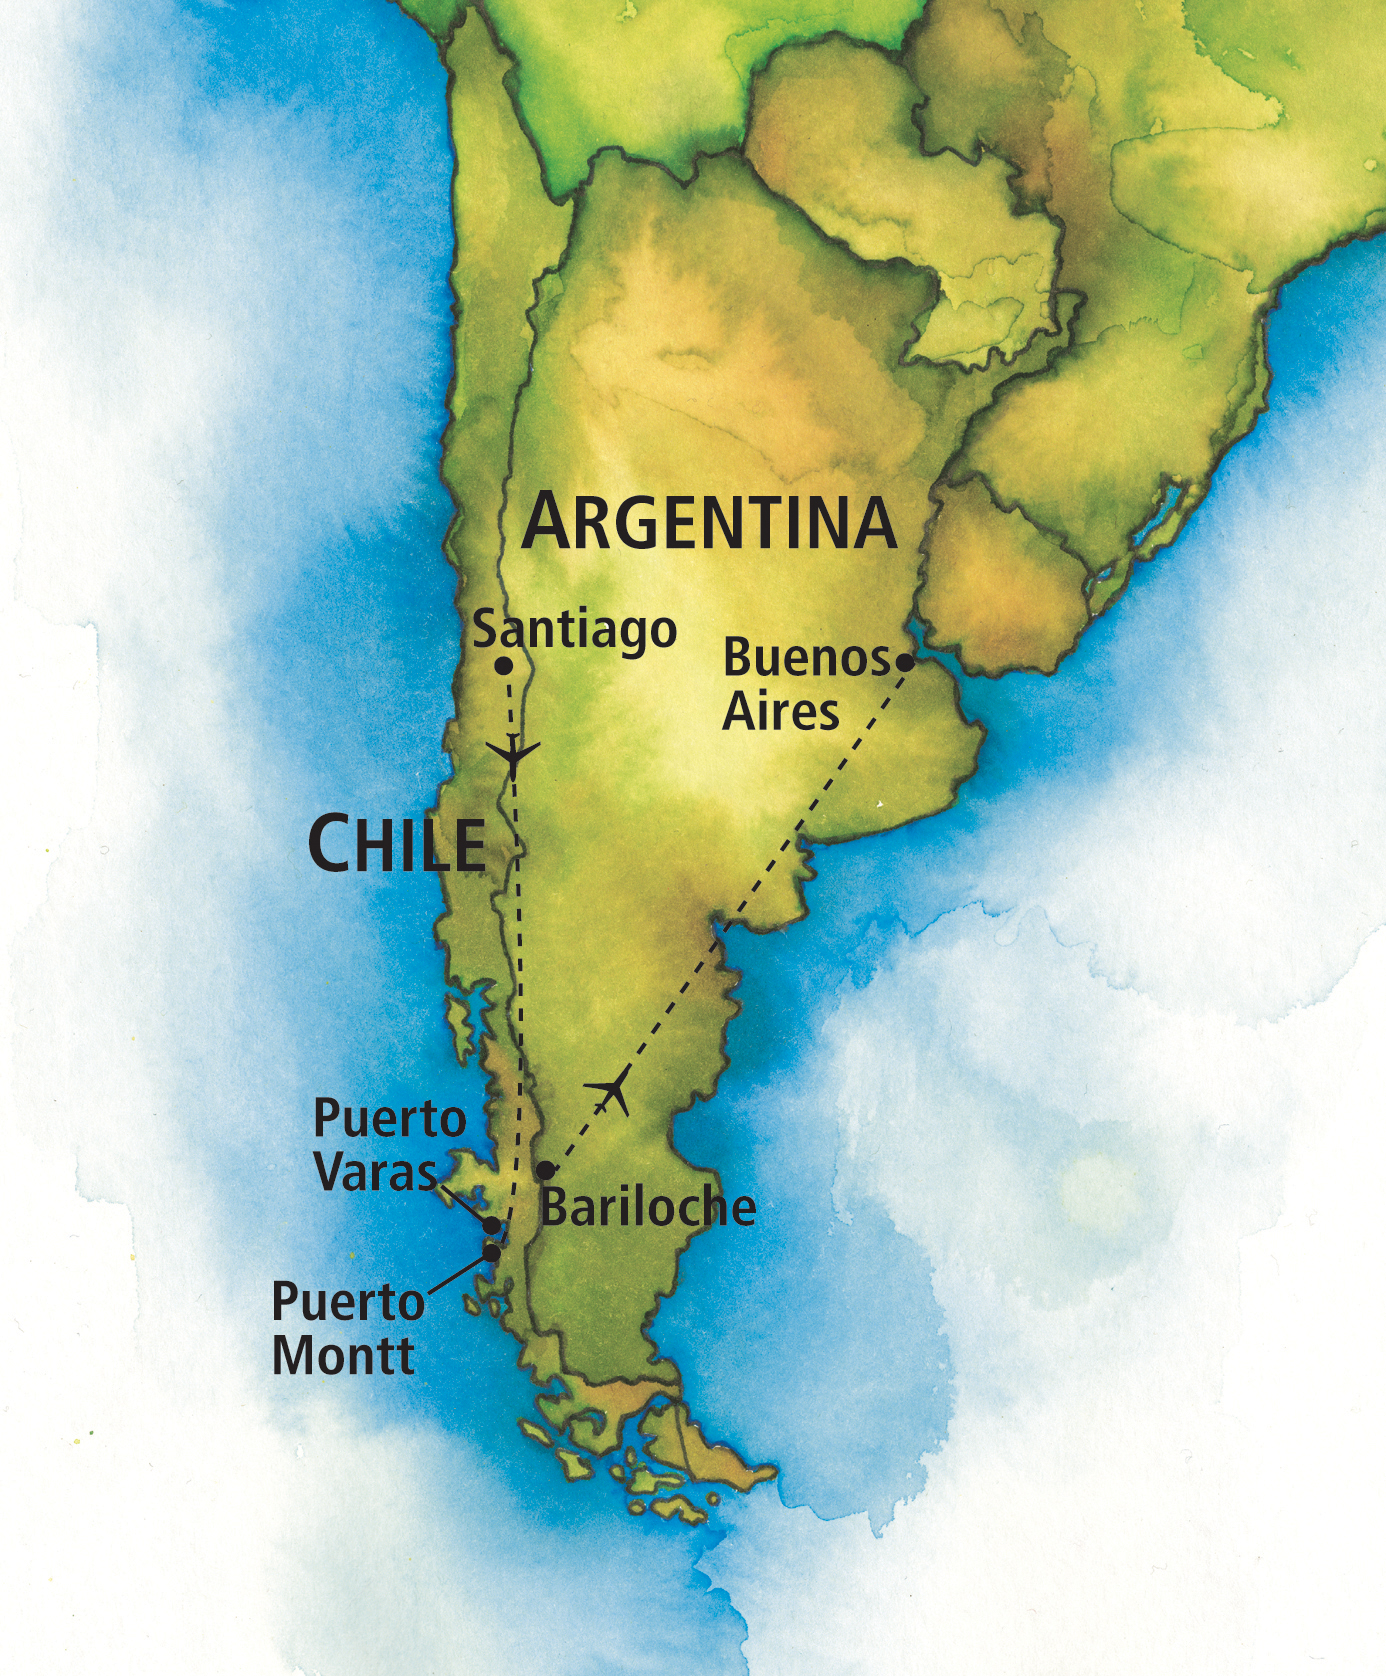 Аргентина страна географическое положение. Аргентина Страна на карте Южной Америки. Аргентина столица Буэнос-Айрес на карте. Государство Аргентина на карте. Аргентина Чили материк.